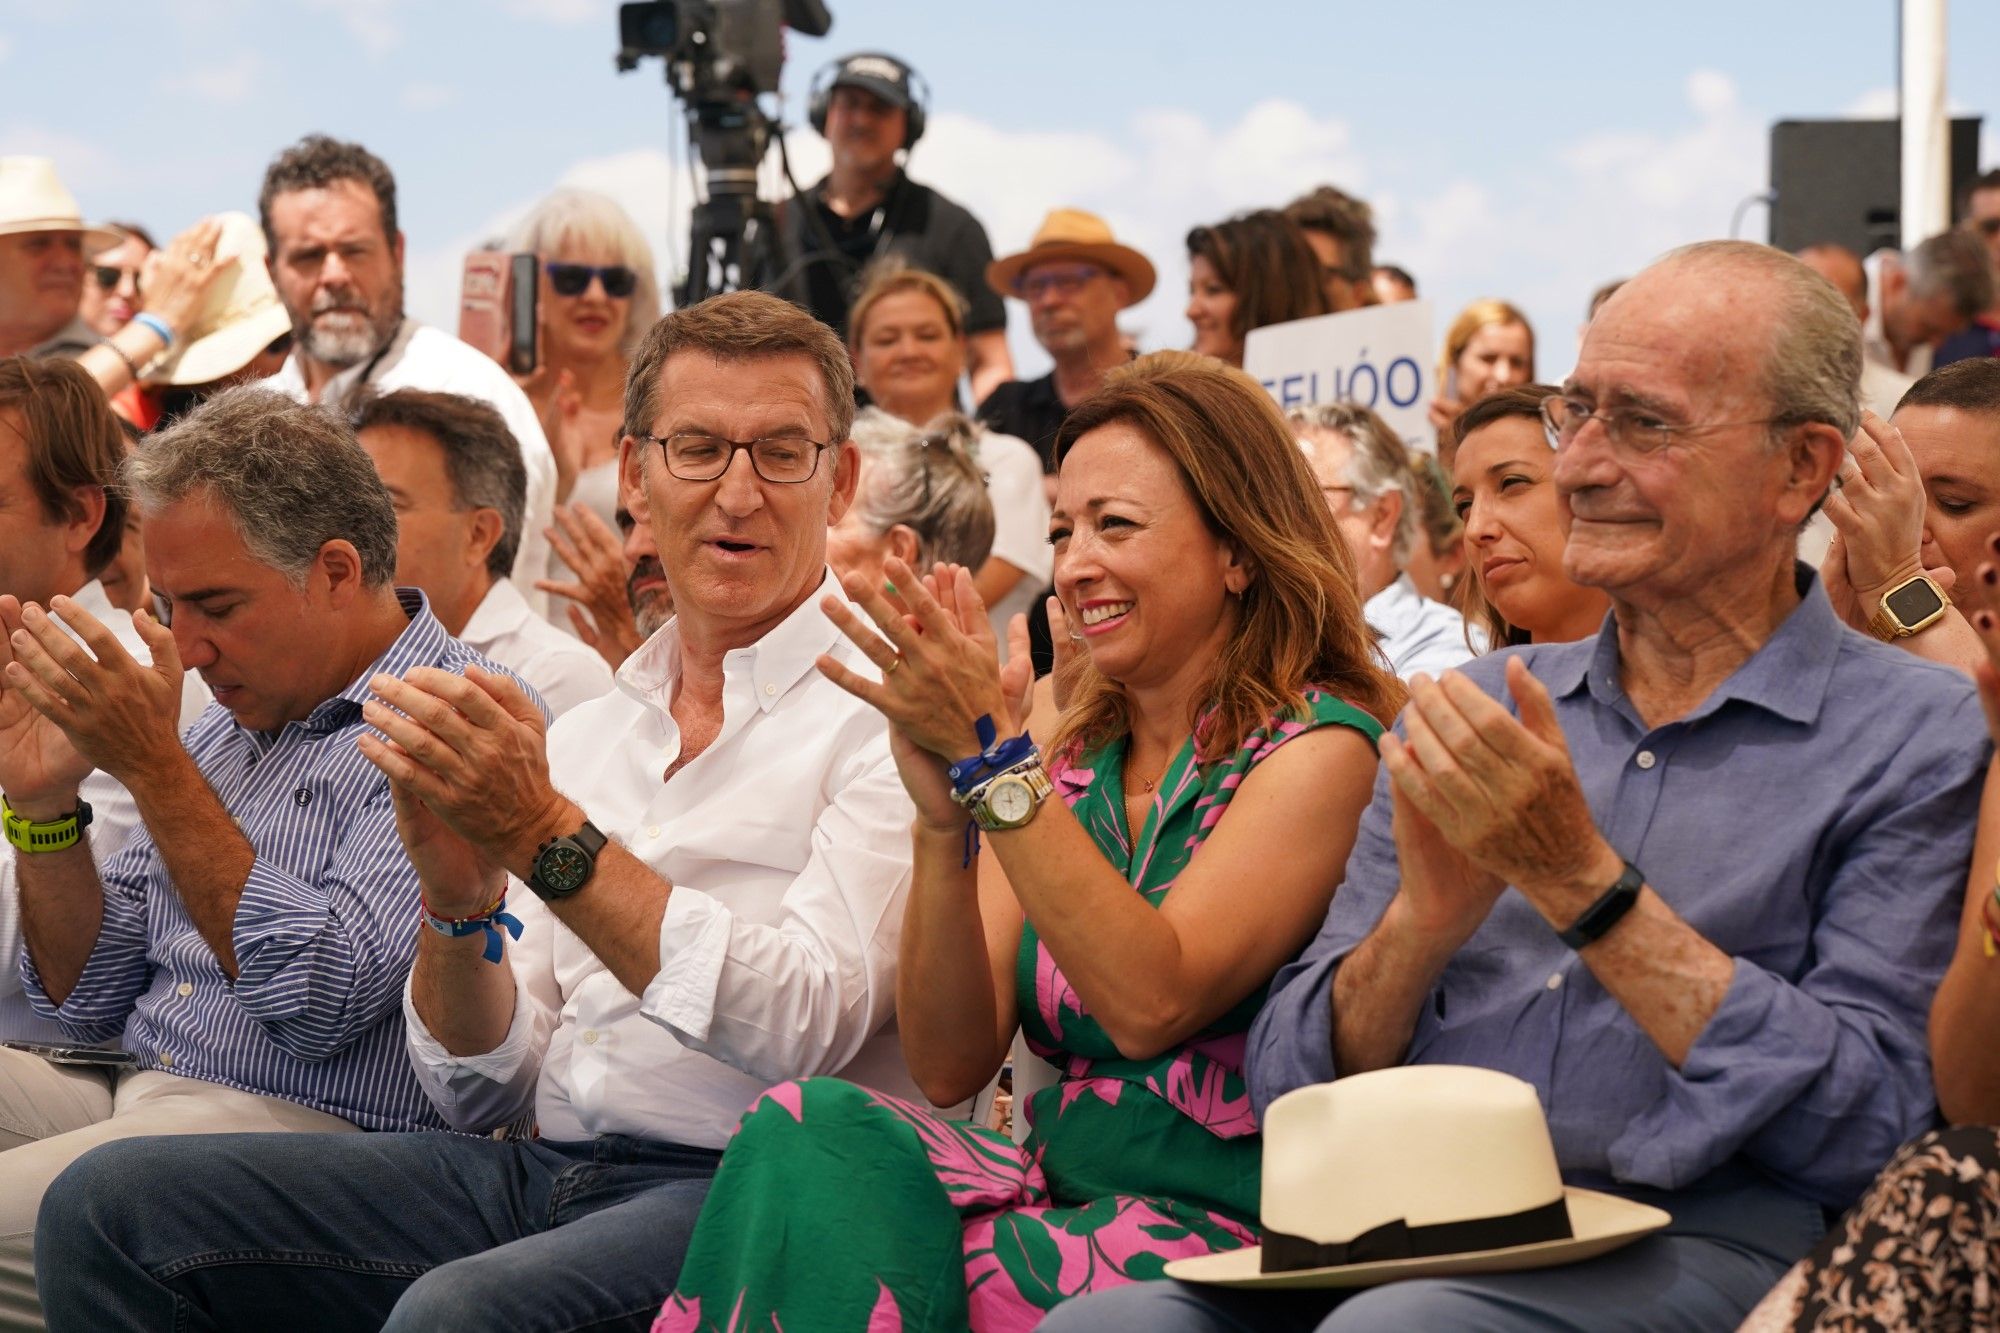 Feijóo cierra en Málaga la campaña del 23J con un mitin en los Baños del Carmen